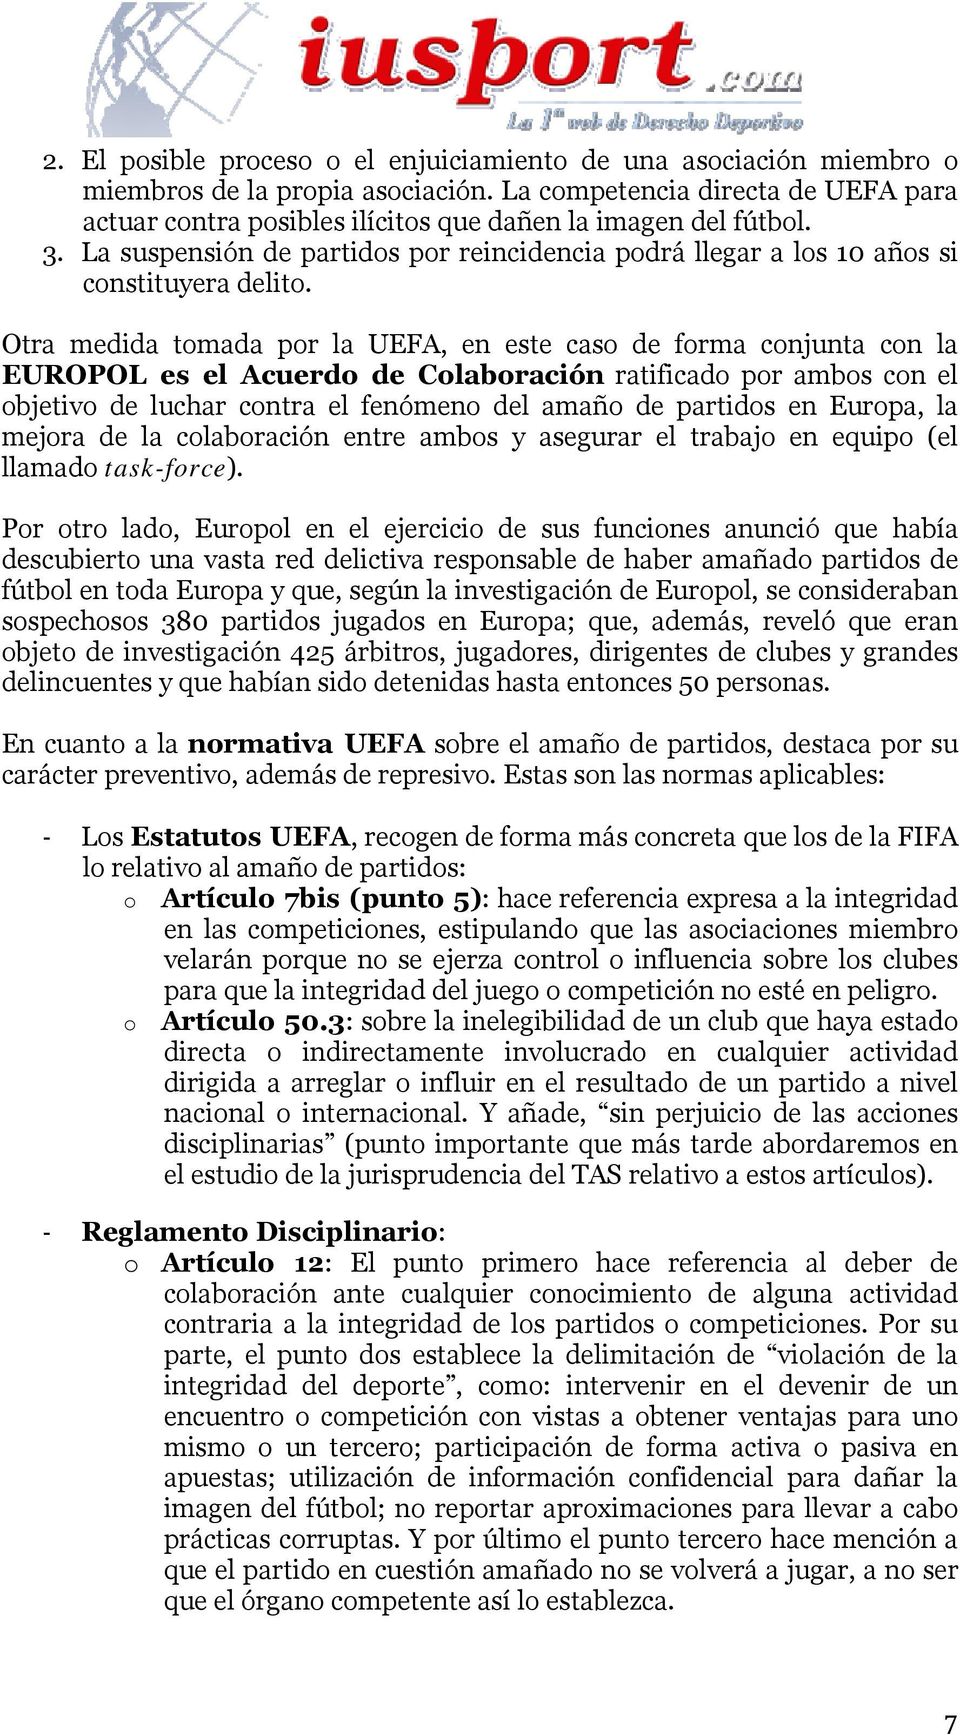 Otra medida tomada por la UEFA, en este caso de forma conjunta con la EUROPOL es el Acuerdo de Colaboración ratificado por ambos con el objetivo de luchar contra el fenómeno del amaño de partidos en